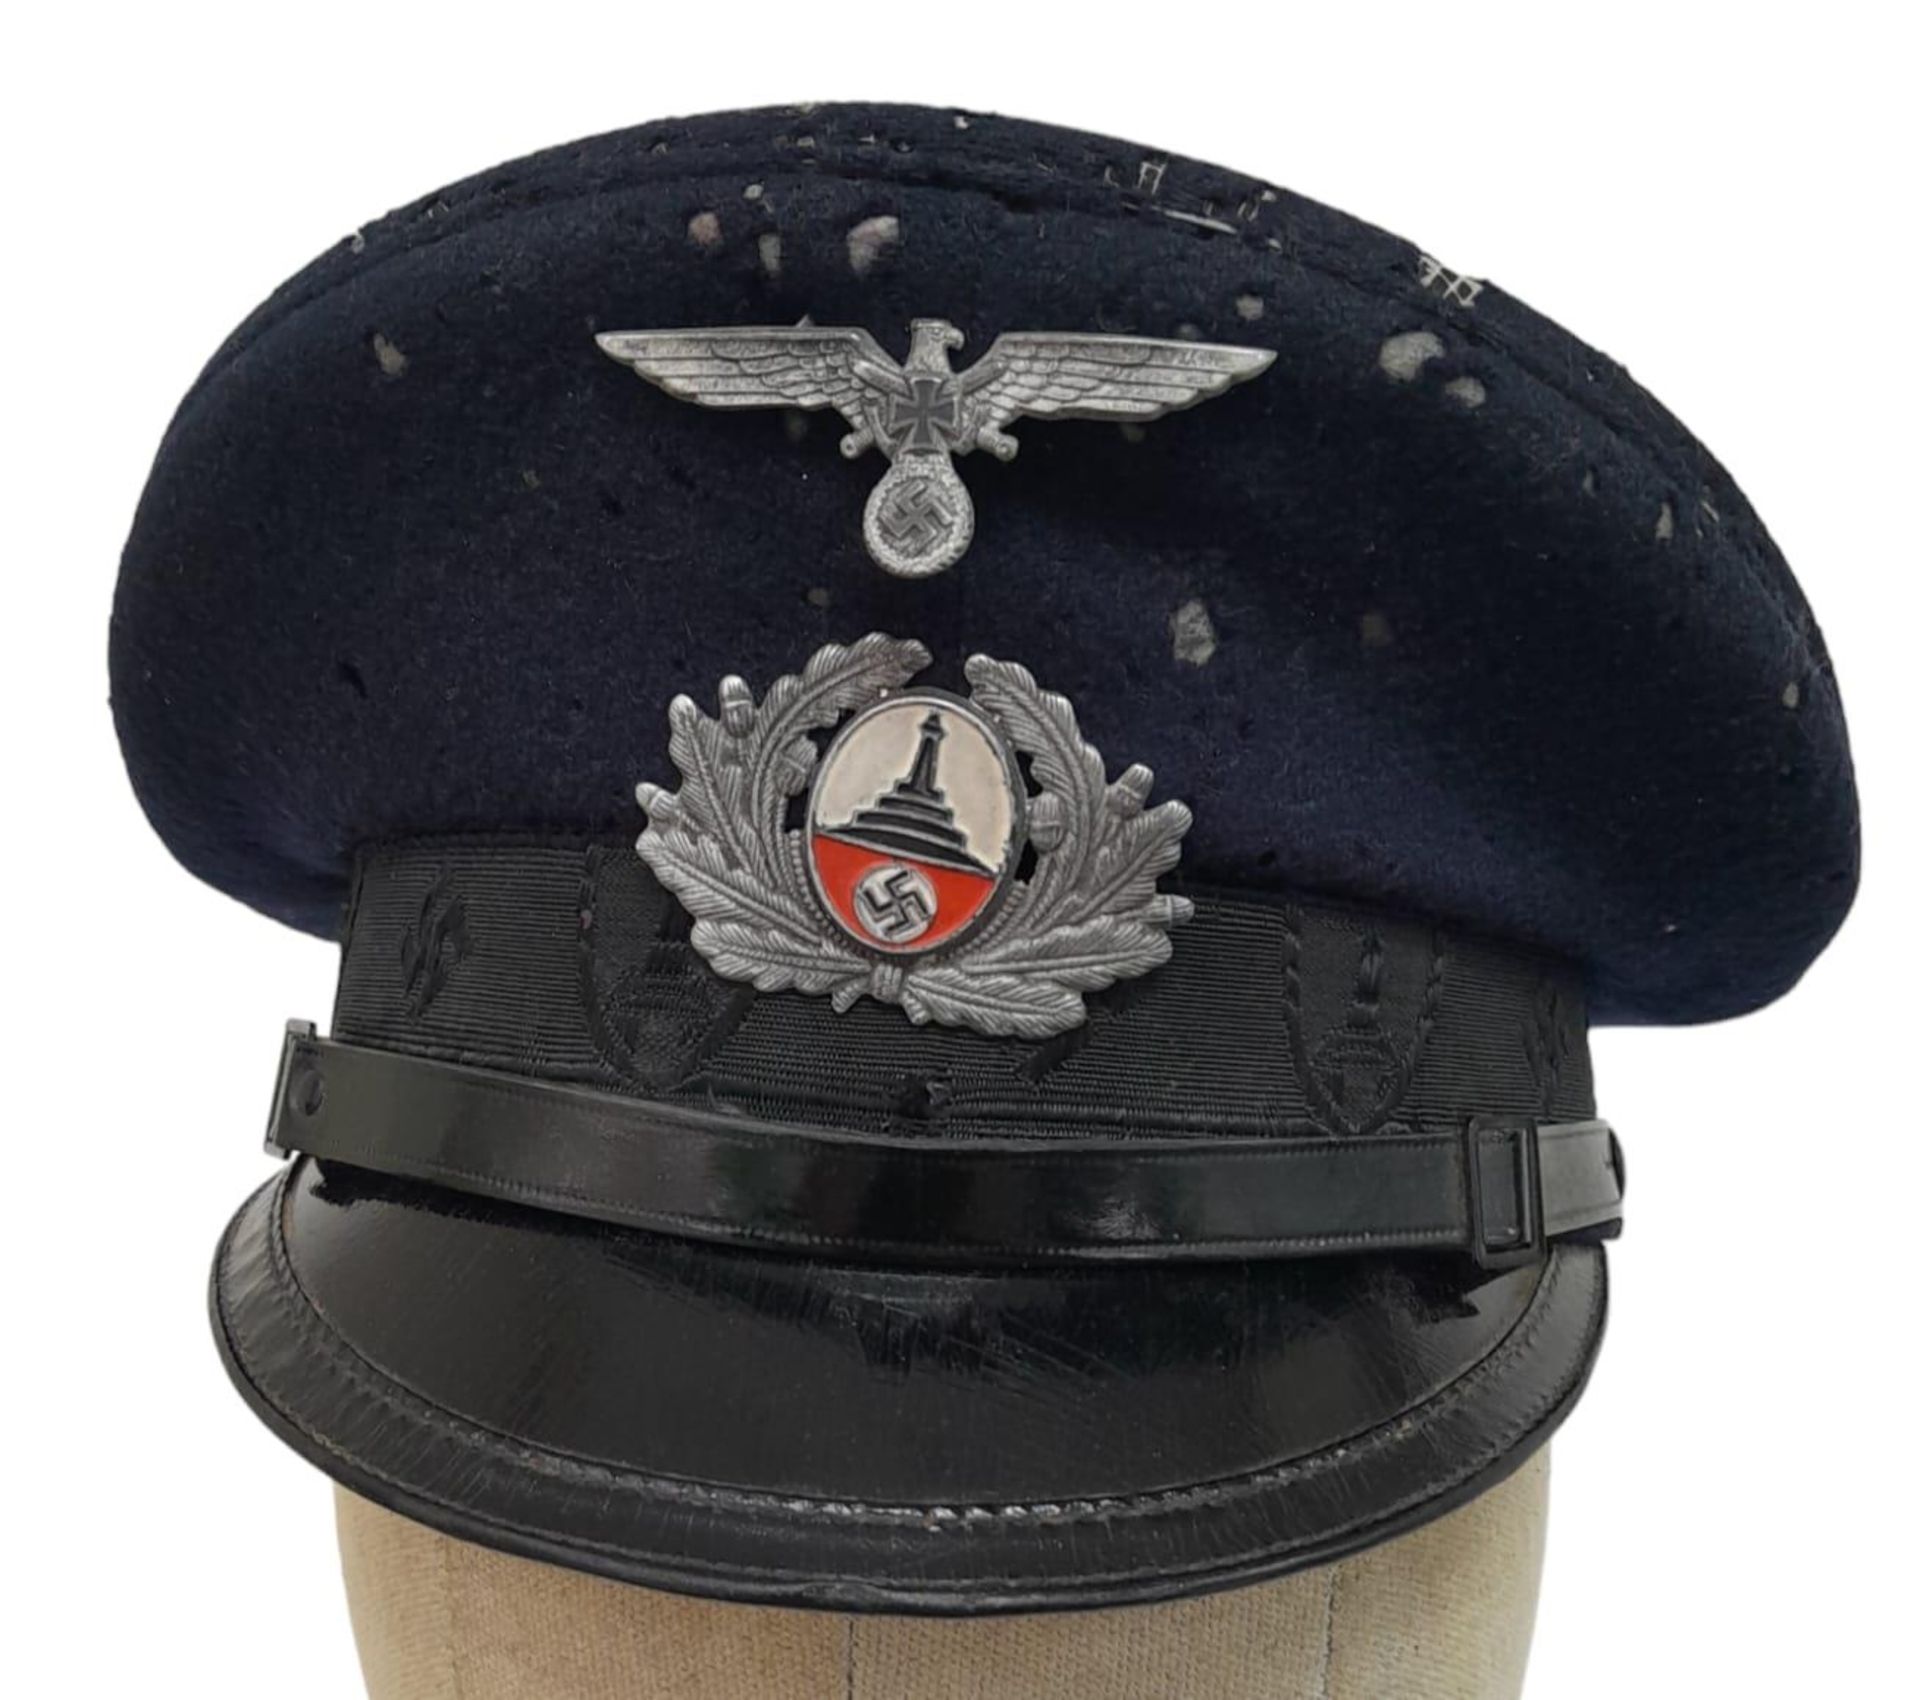 WW2 German D.R.K.B. (Deutscher Reichskriegerbund) Veterans League Visor Cap.